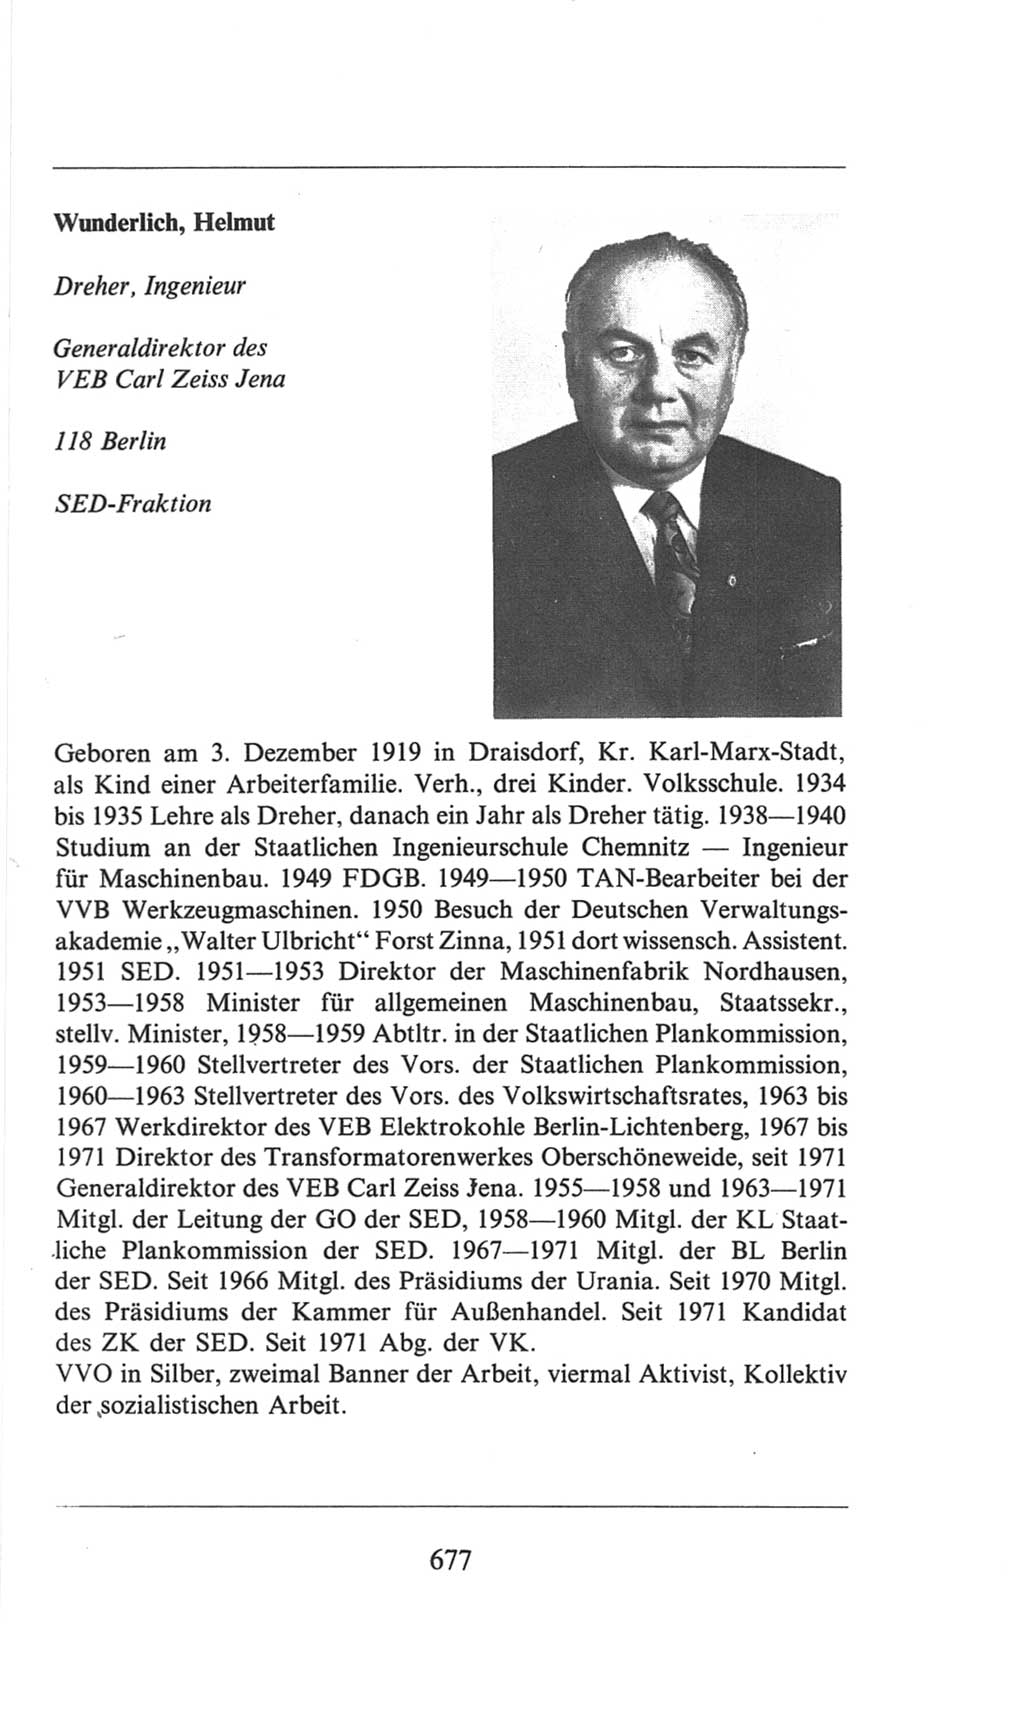 Volkskammer (VK) der Deutschen Demokratischen Republik (DDR), 6. Wahlperiode 1971-1976, Seite 677 (VK. DDR 6. WP. 1971-1976, S. 677)